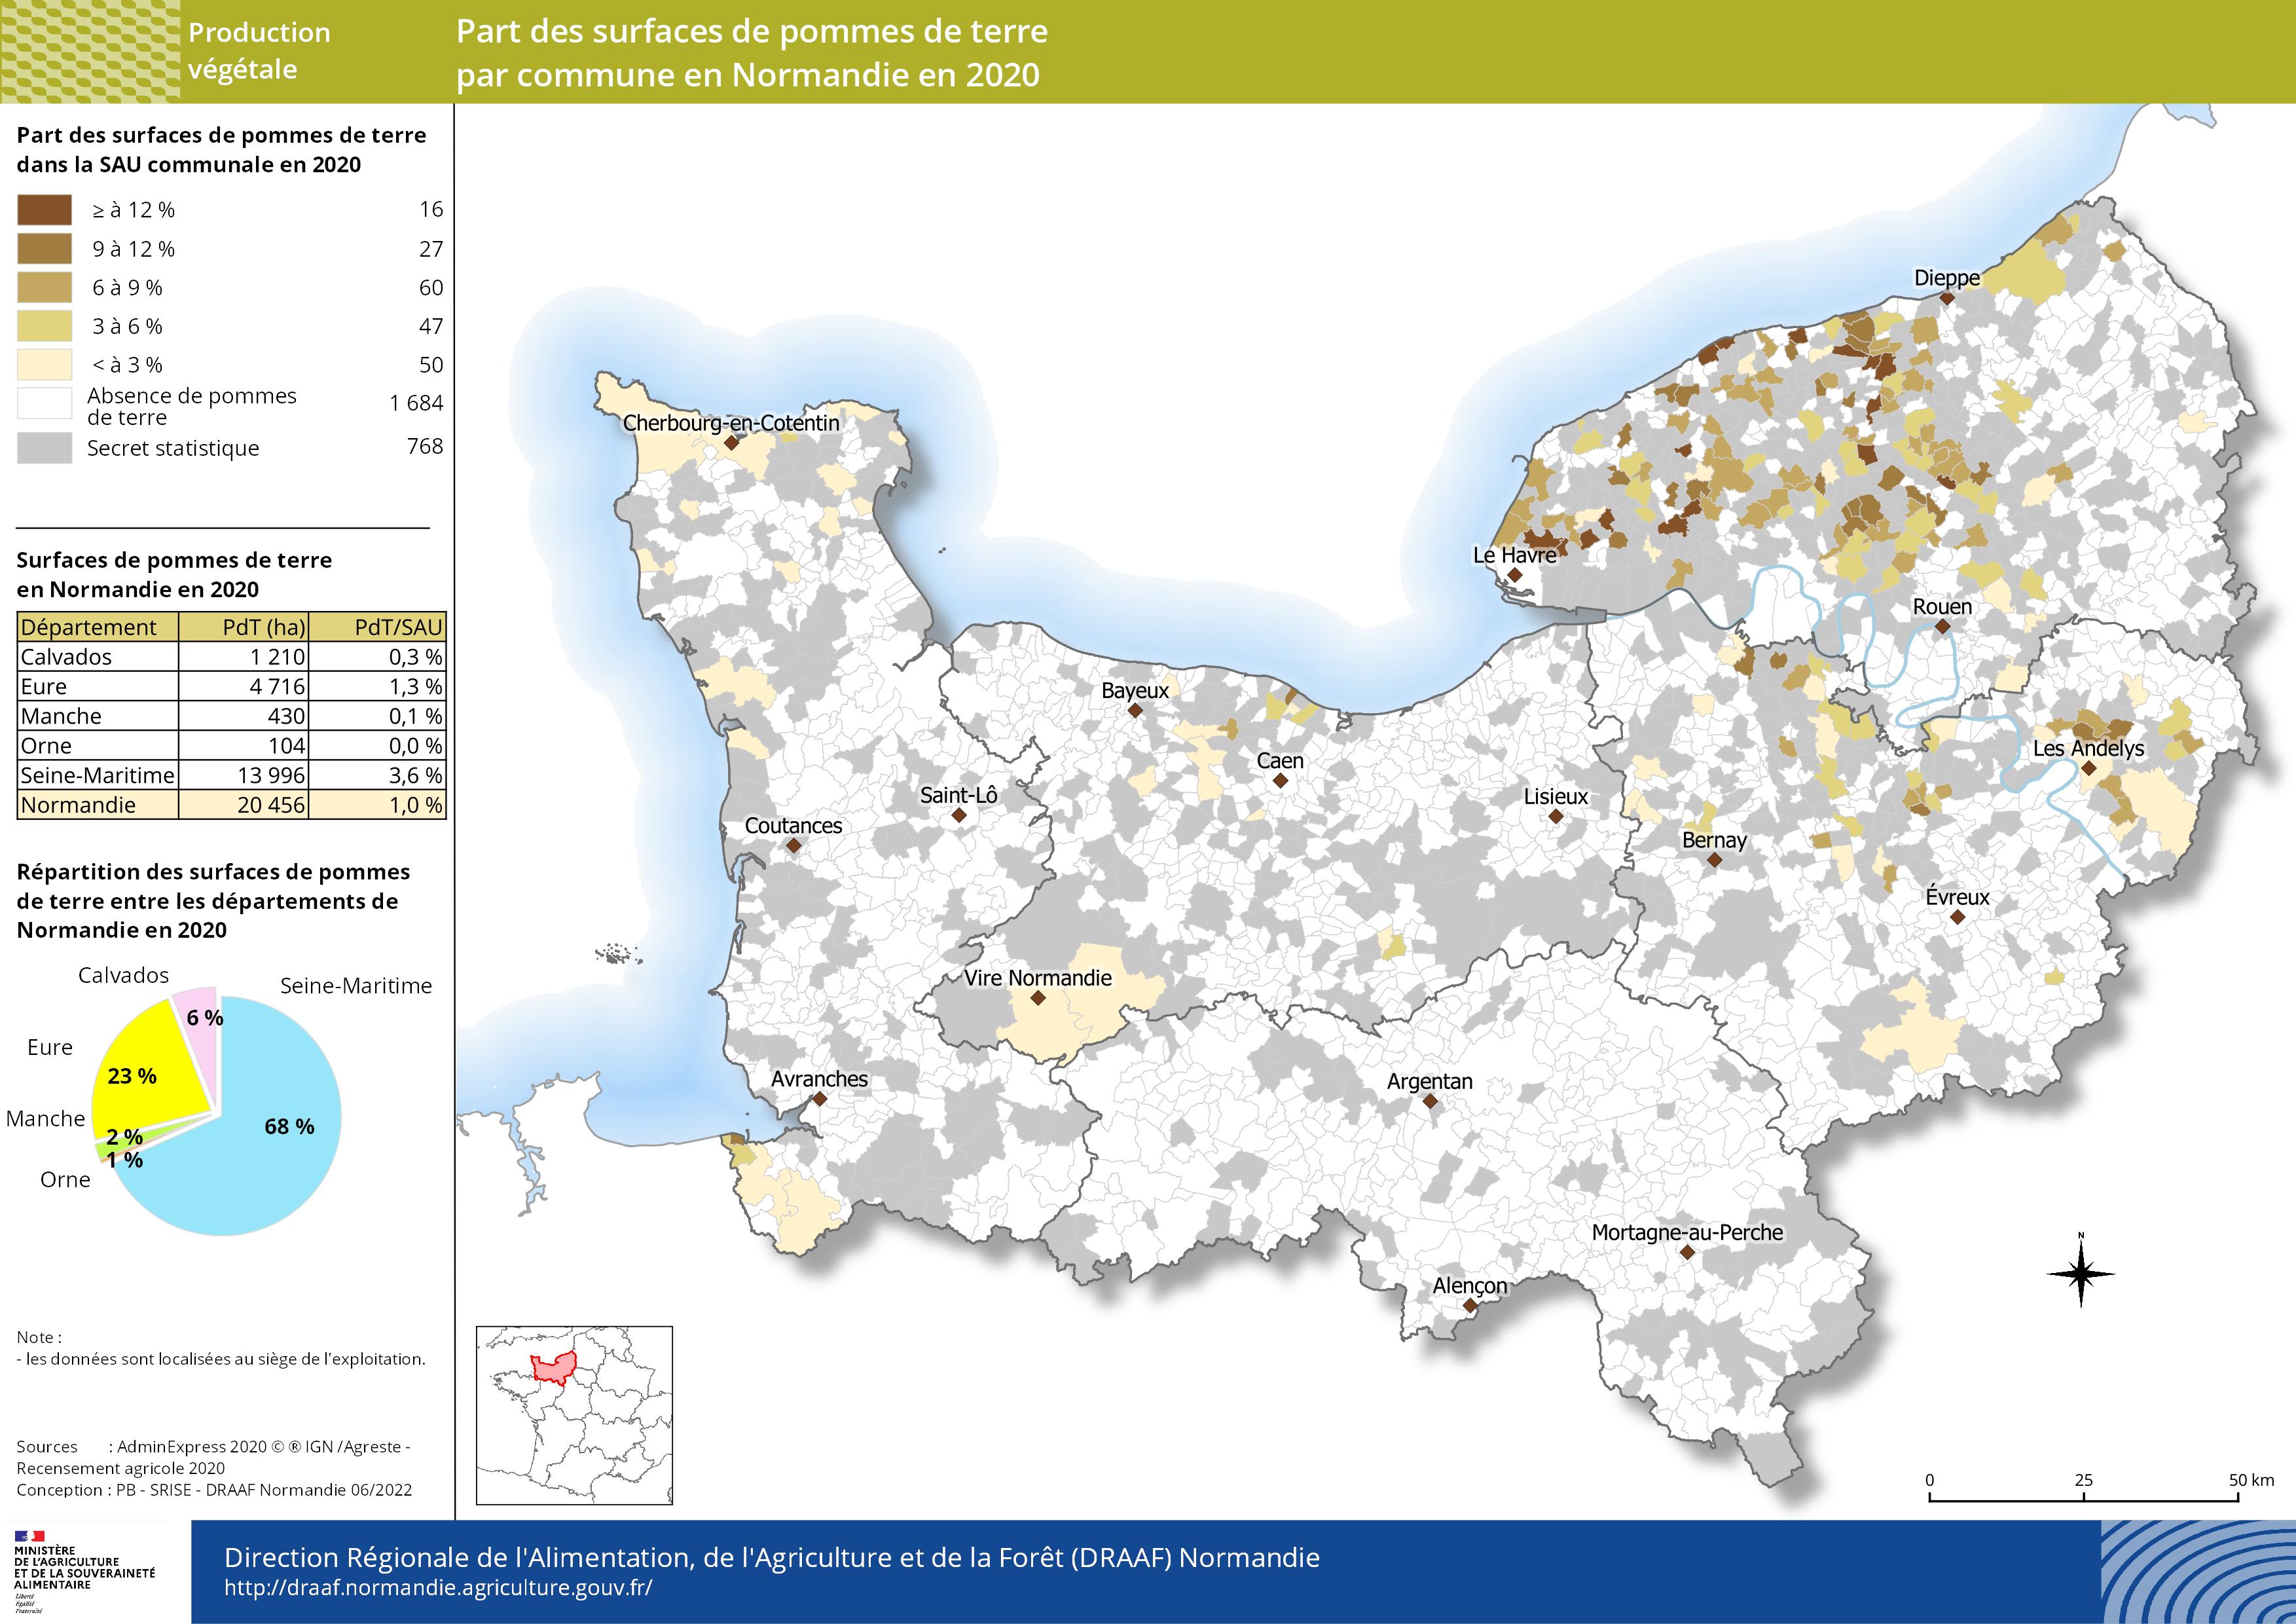 carte représentant la part des surfaces de pommes de terre par commune en Normandie en 2020